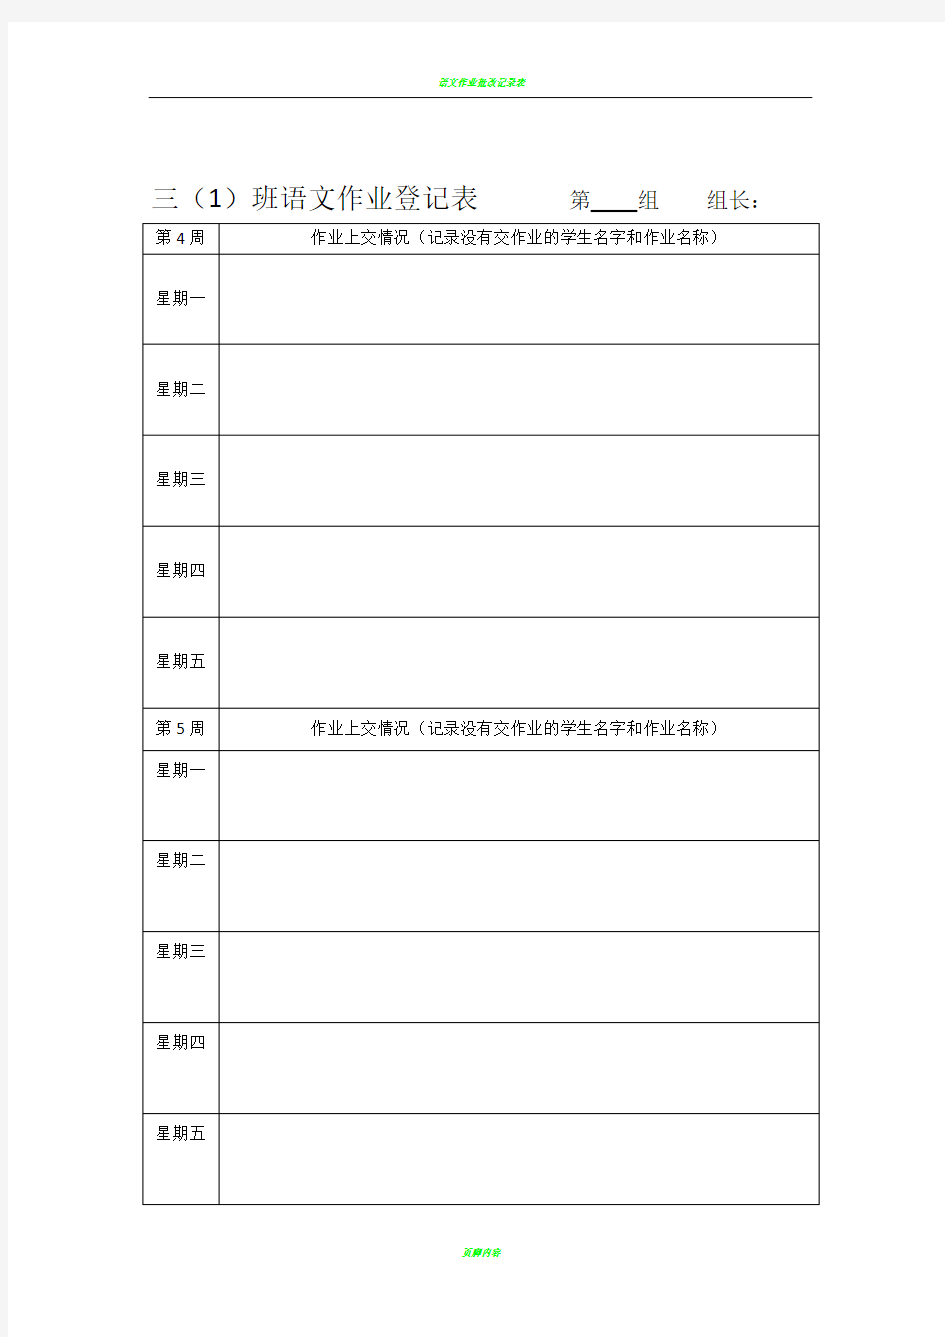 语文作业登记表